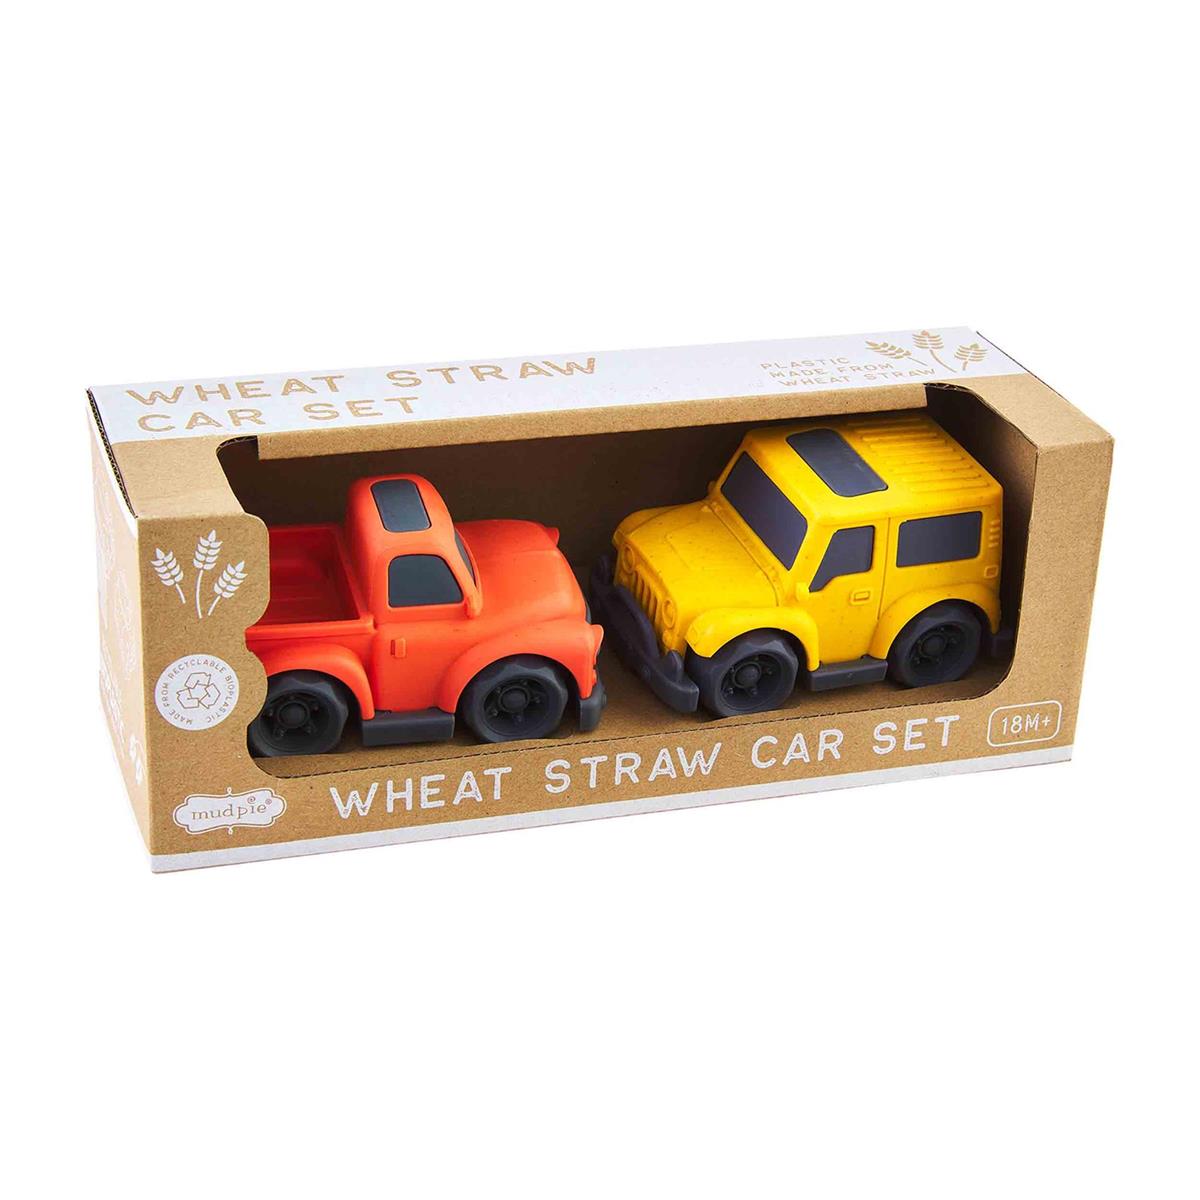 Orange Toy Car Set